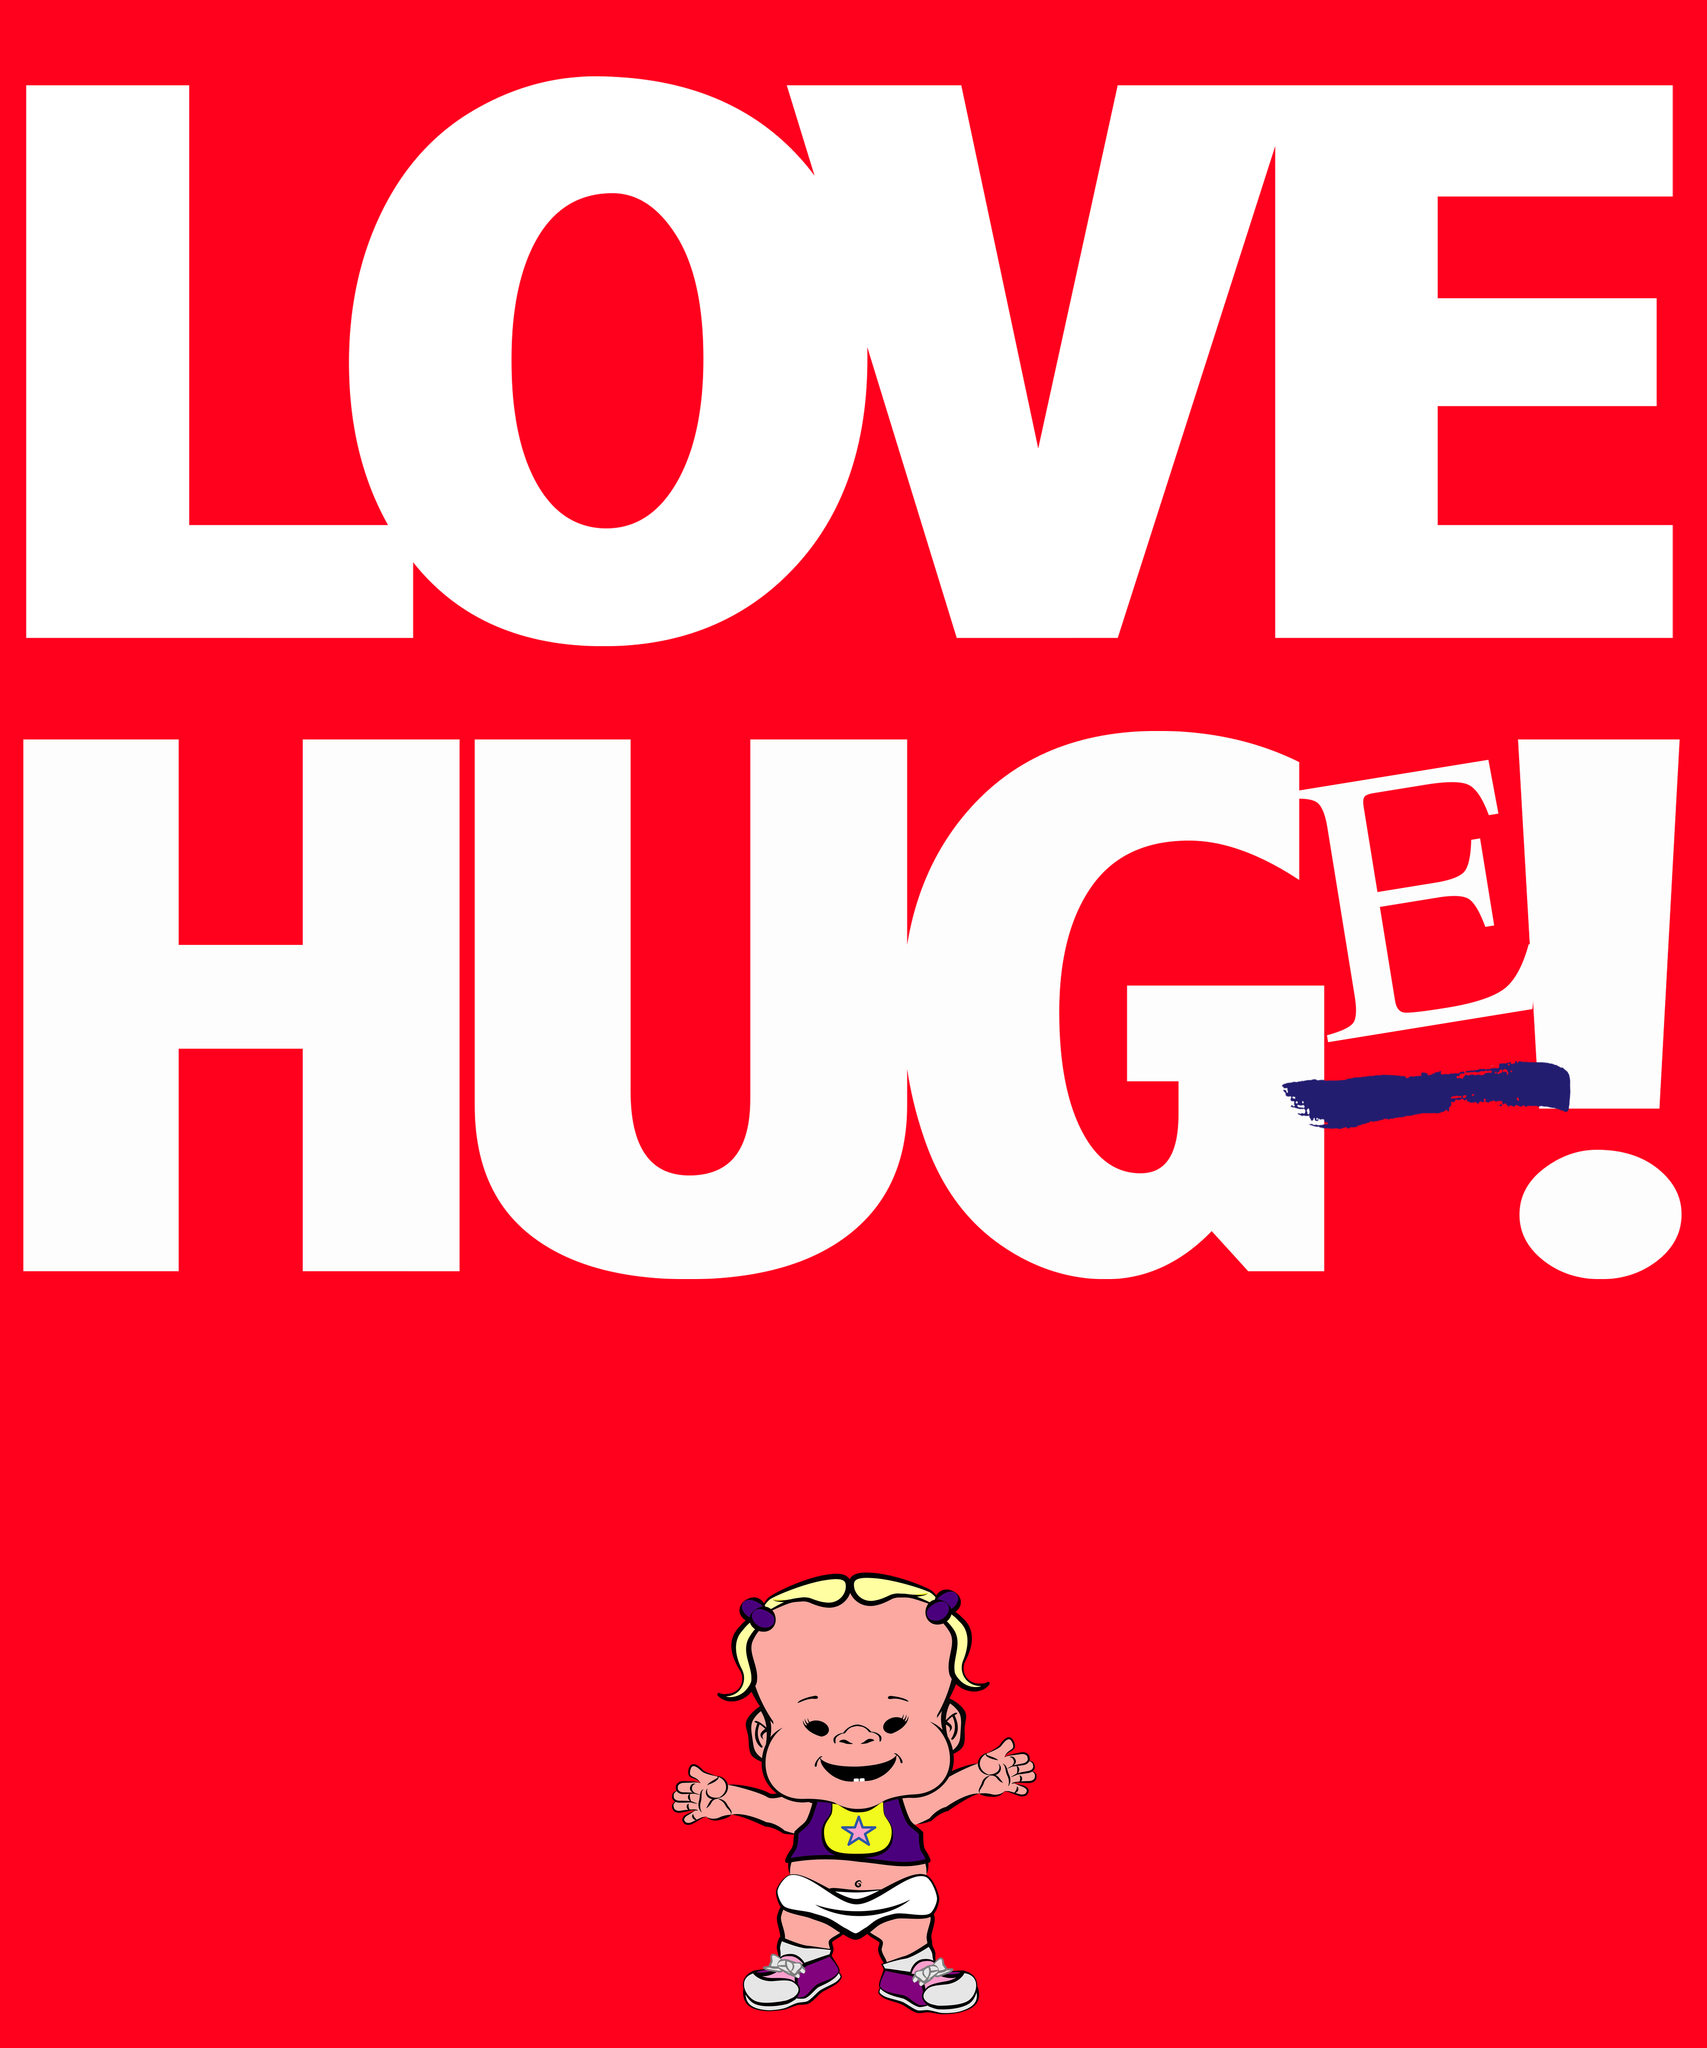 PBYZ1248_Love_Hug(e)_girl_2_Red